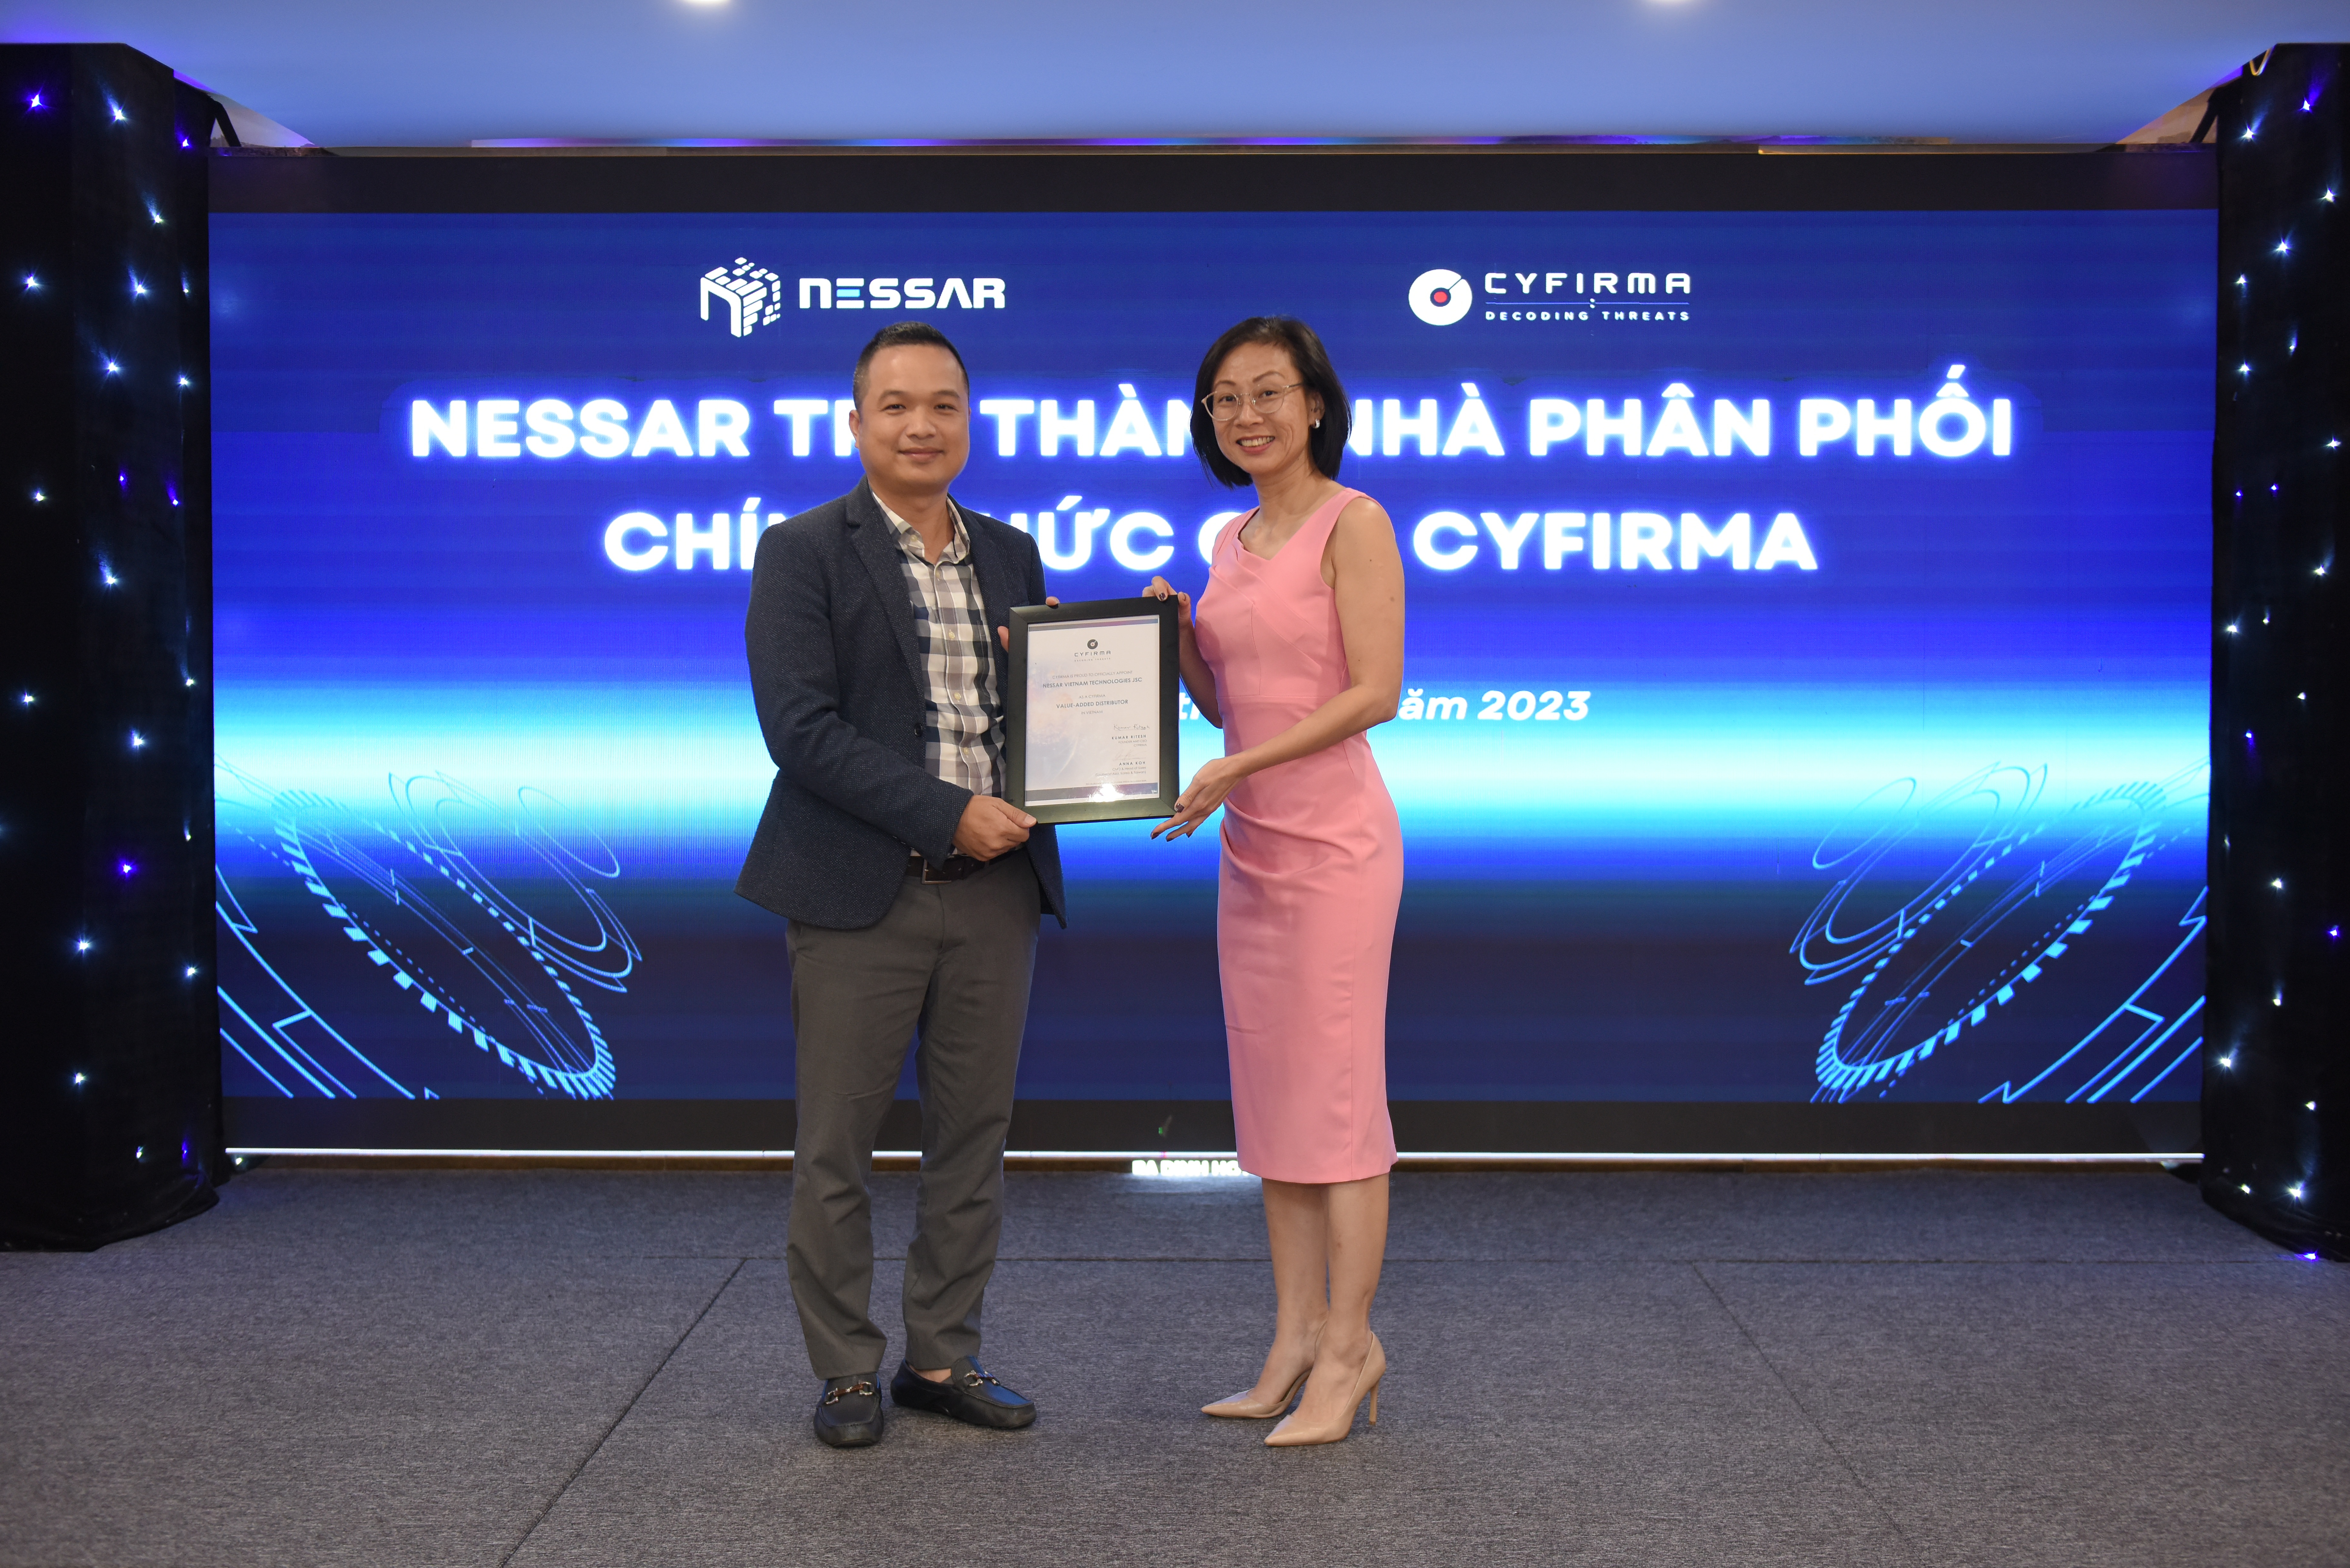 Hình ảnh 3: Đại diện hãng công nghệ Cyfirma trao chứng nhận phân phối cho Nessar tại sự kiện